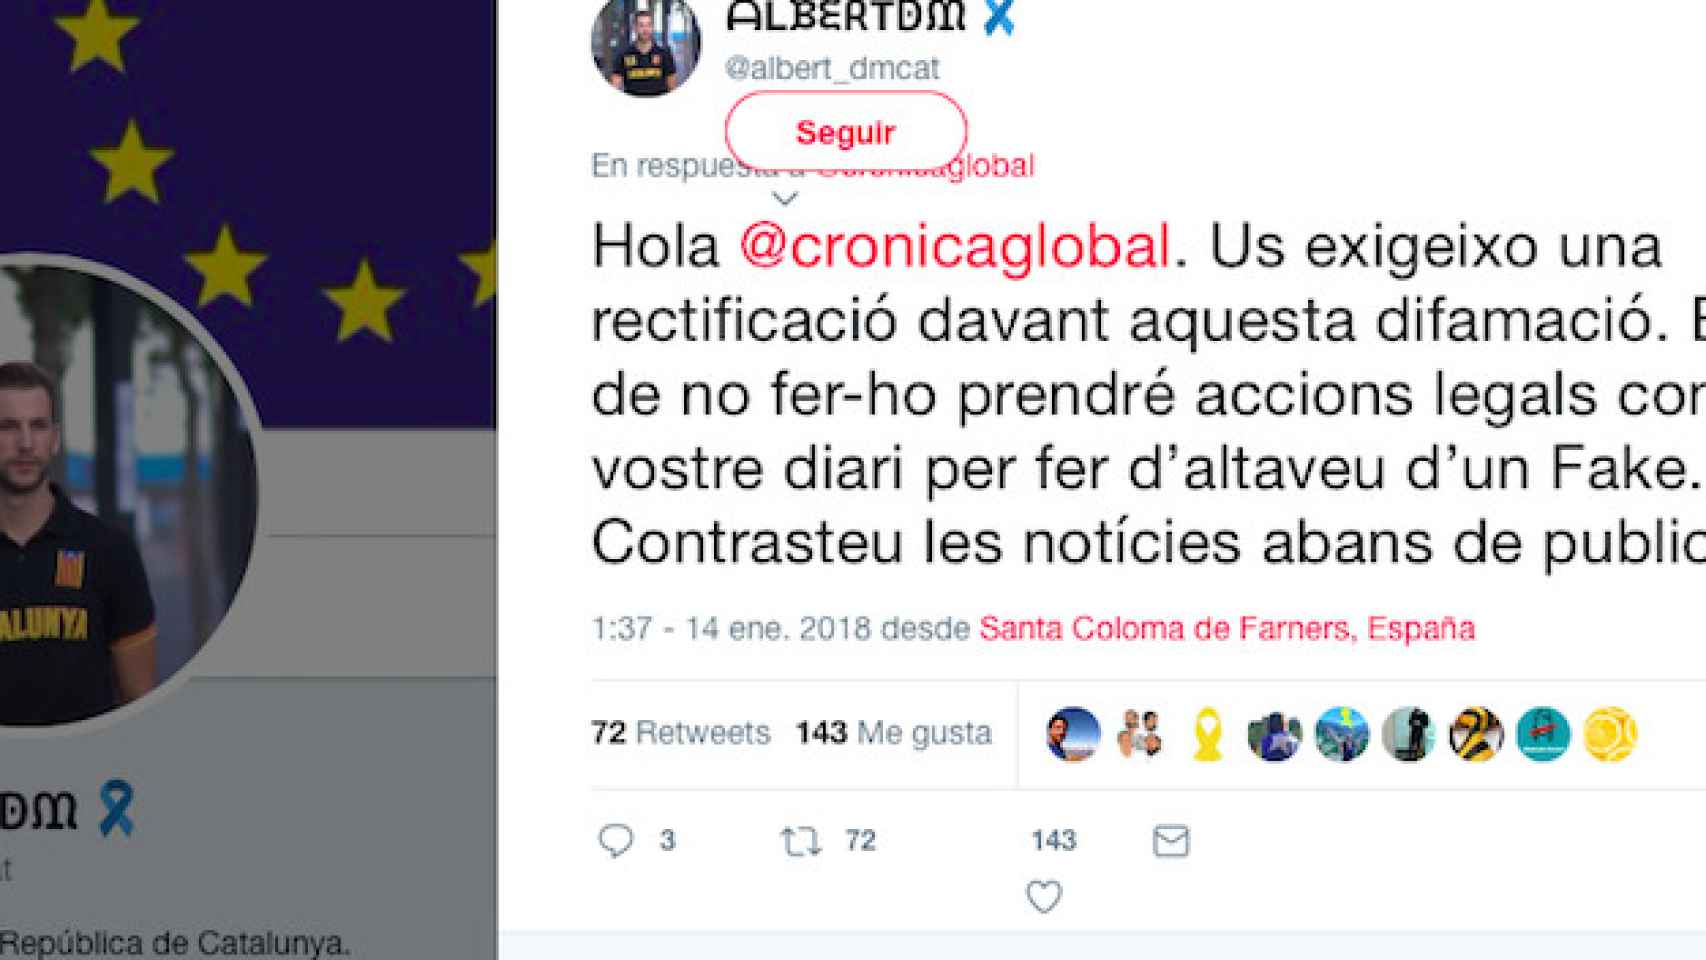 El mensaje con el que Albert Donaire amenaza a 'Cronica Global' / CG